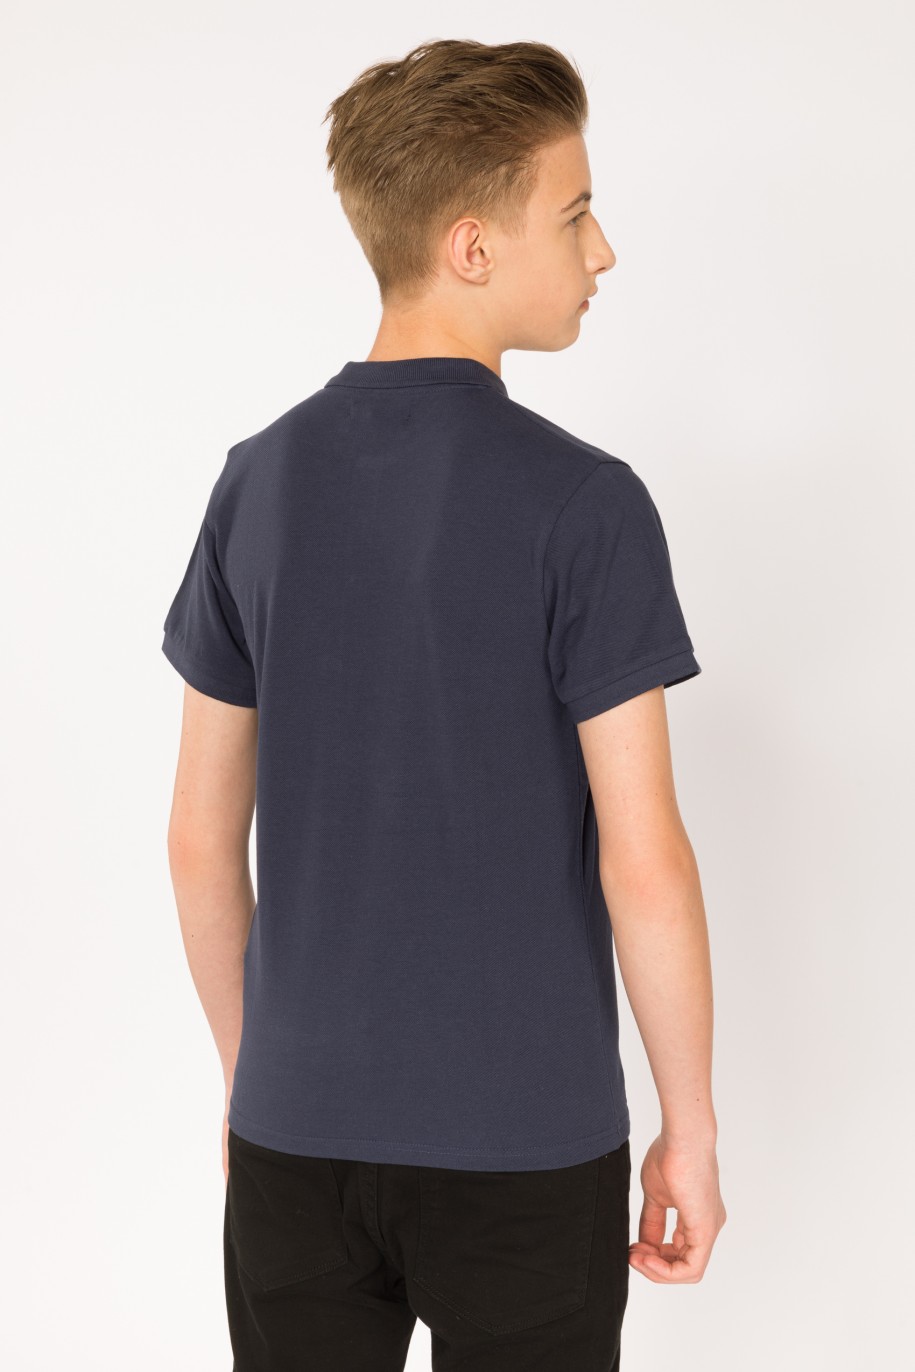 Granatowy t-shirt polo dla chłopaka - 28460